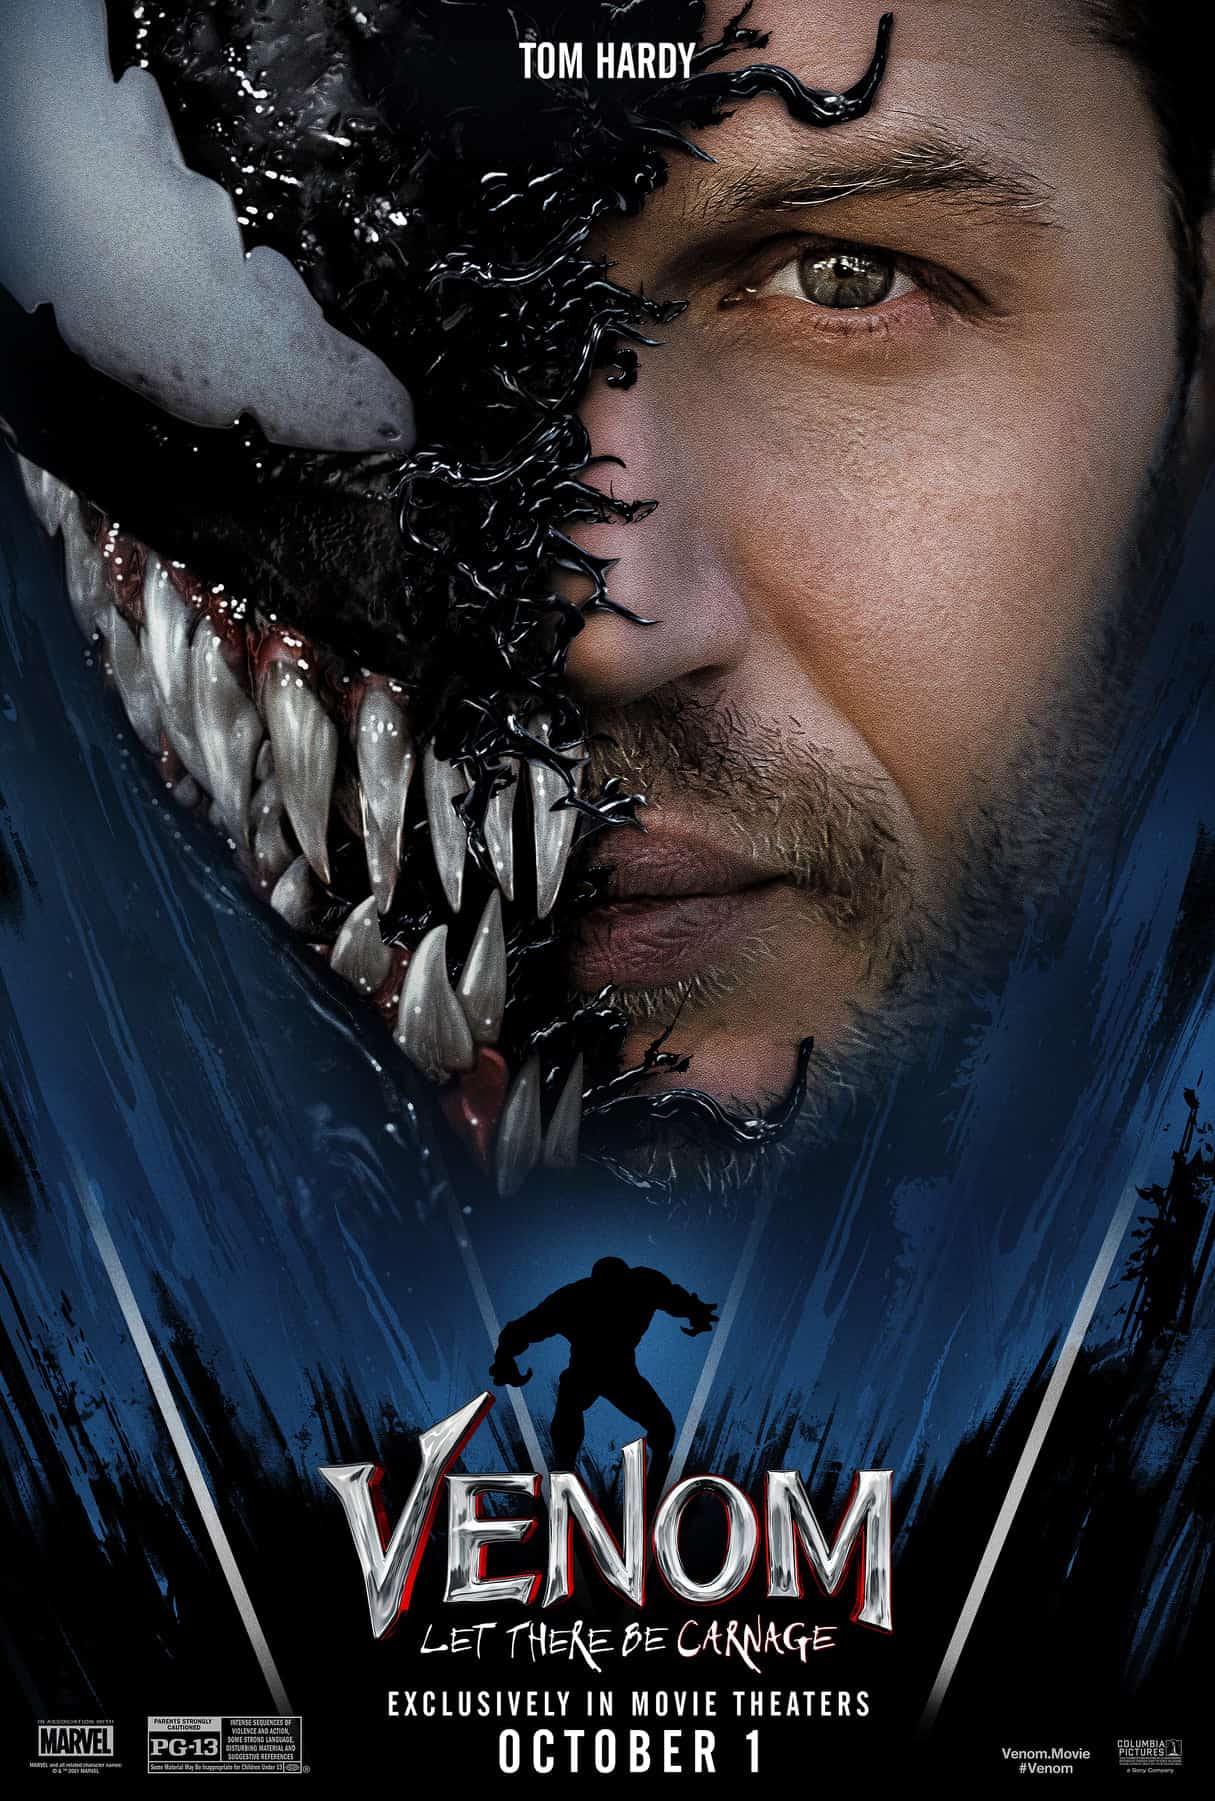 Download Venom 2 IMAX 4K ngay hôm nay để trải nghiệm không khí võ thuật cực chất trong Thế giới Siêu nhân Marvel. Được sản xuất và phát hành tới công chúng với chất lượng cao cấp, bộ phim hứa hẹn sẽ mang tới những khoảnh khắc hấp dẫn và kịch tính nhất.